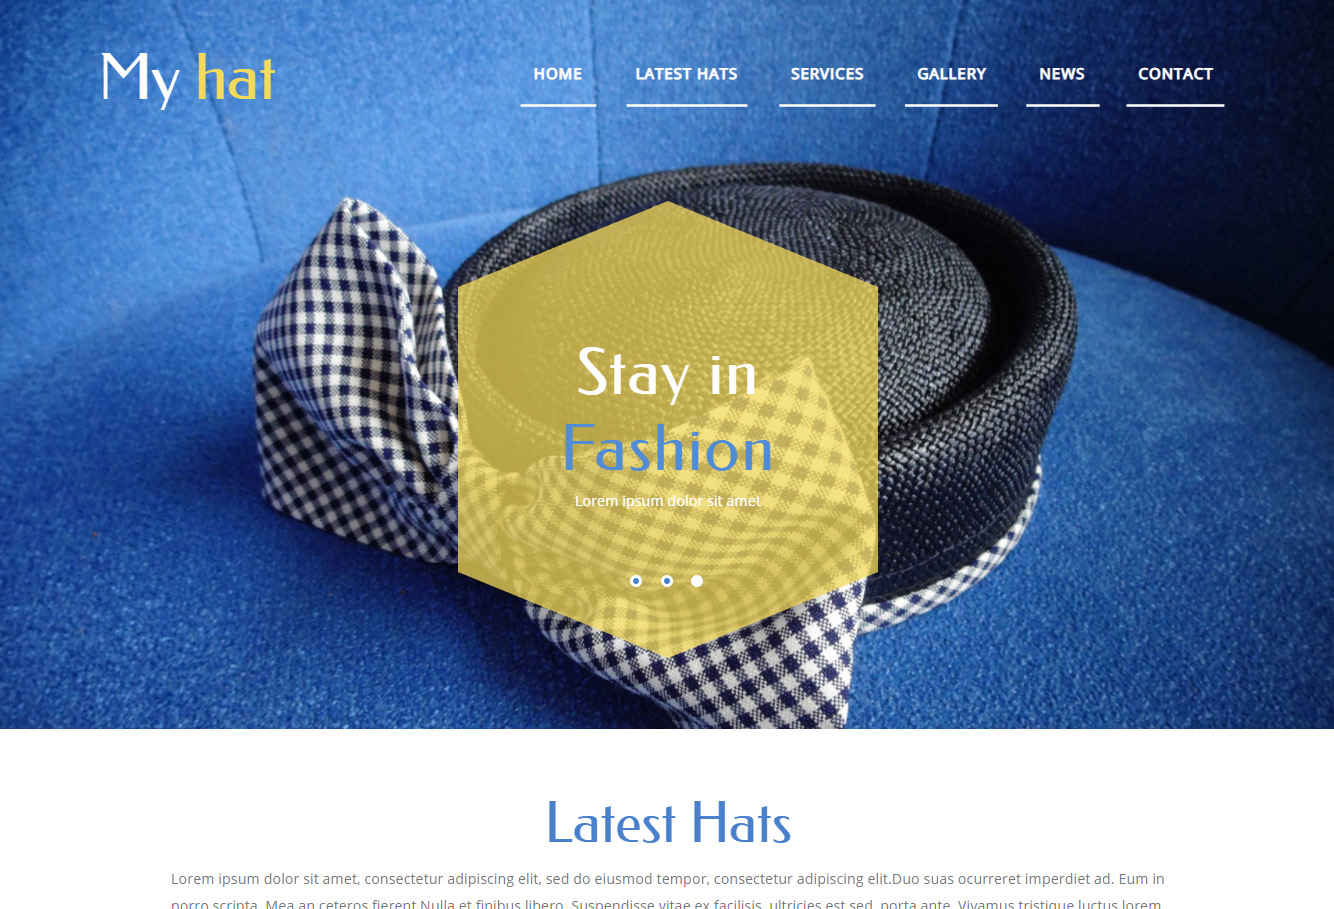 蓝黄色主题帽子设计展示响应式网站模板-Myhat